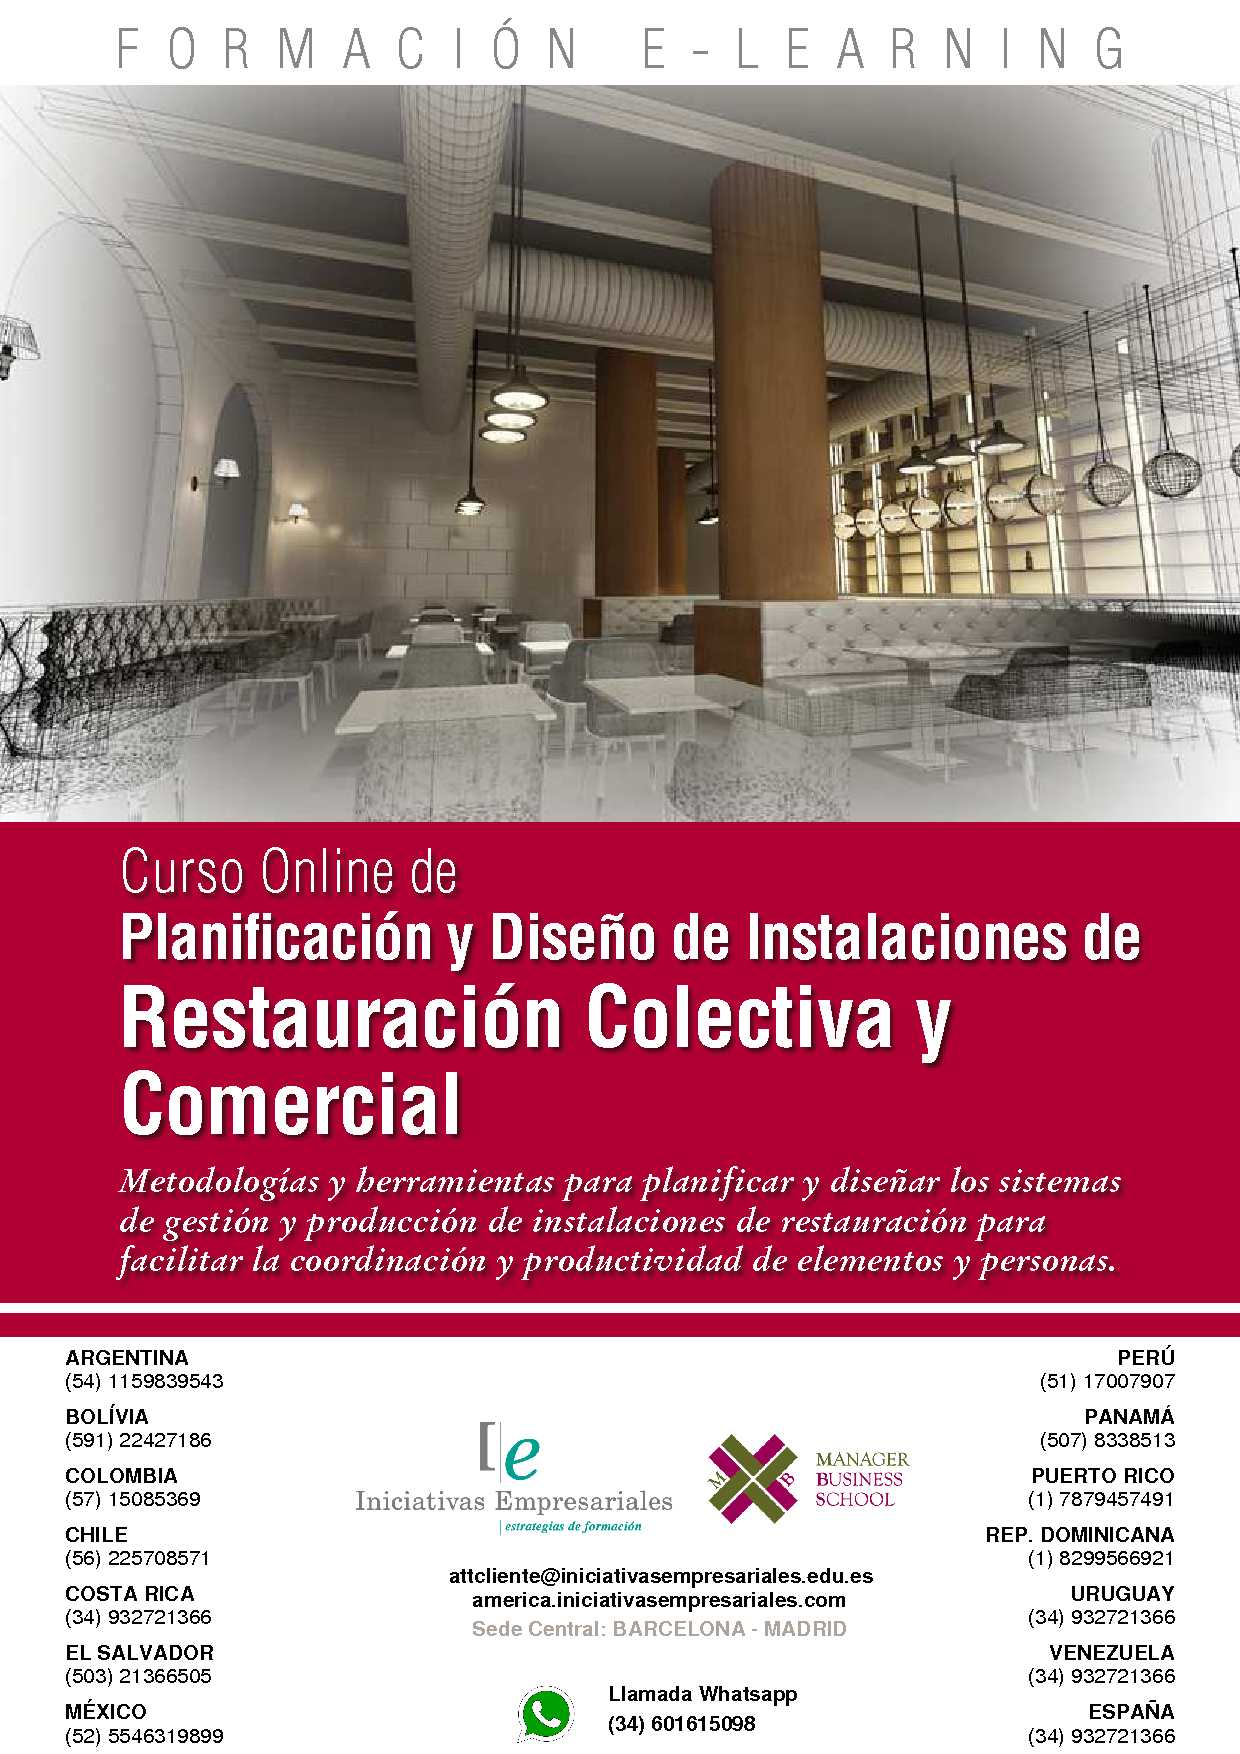 Planificación y Diseño de Instalaciones de Restauración Colectiva y Comercial